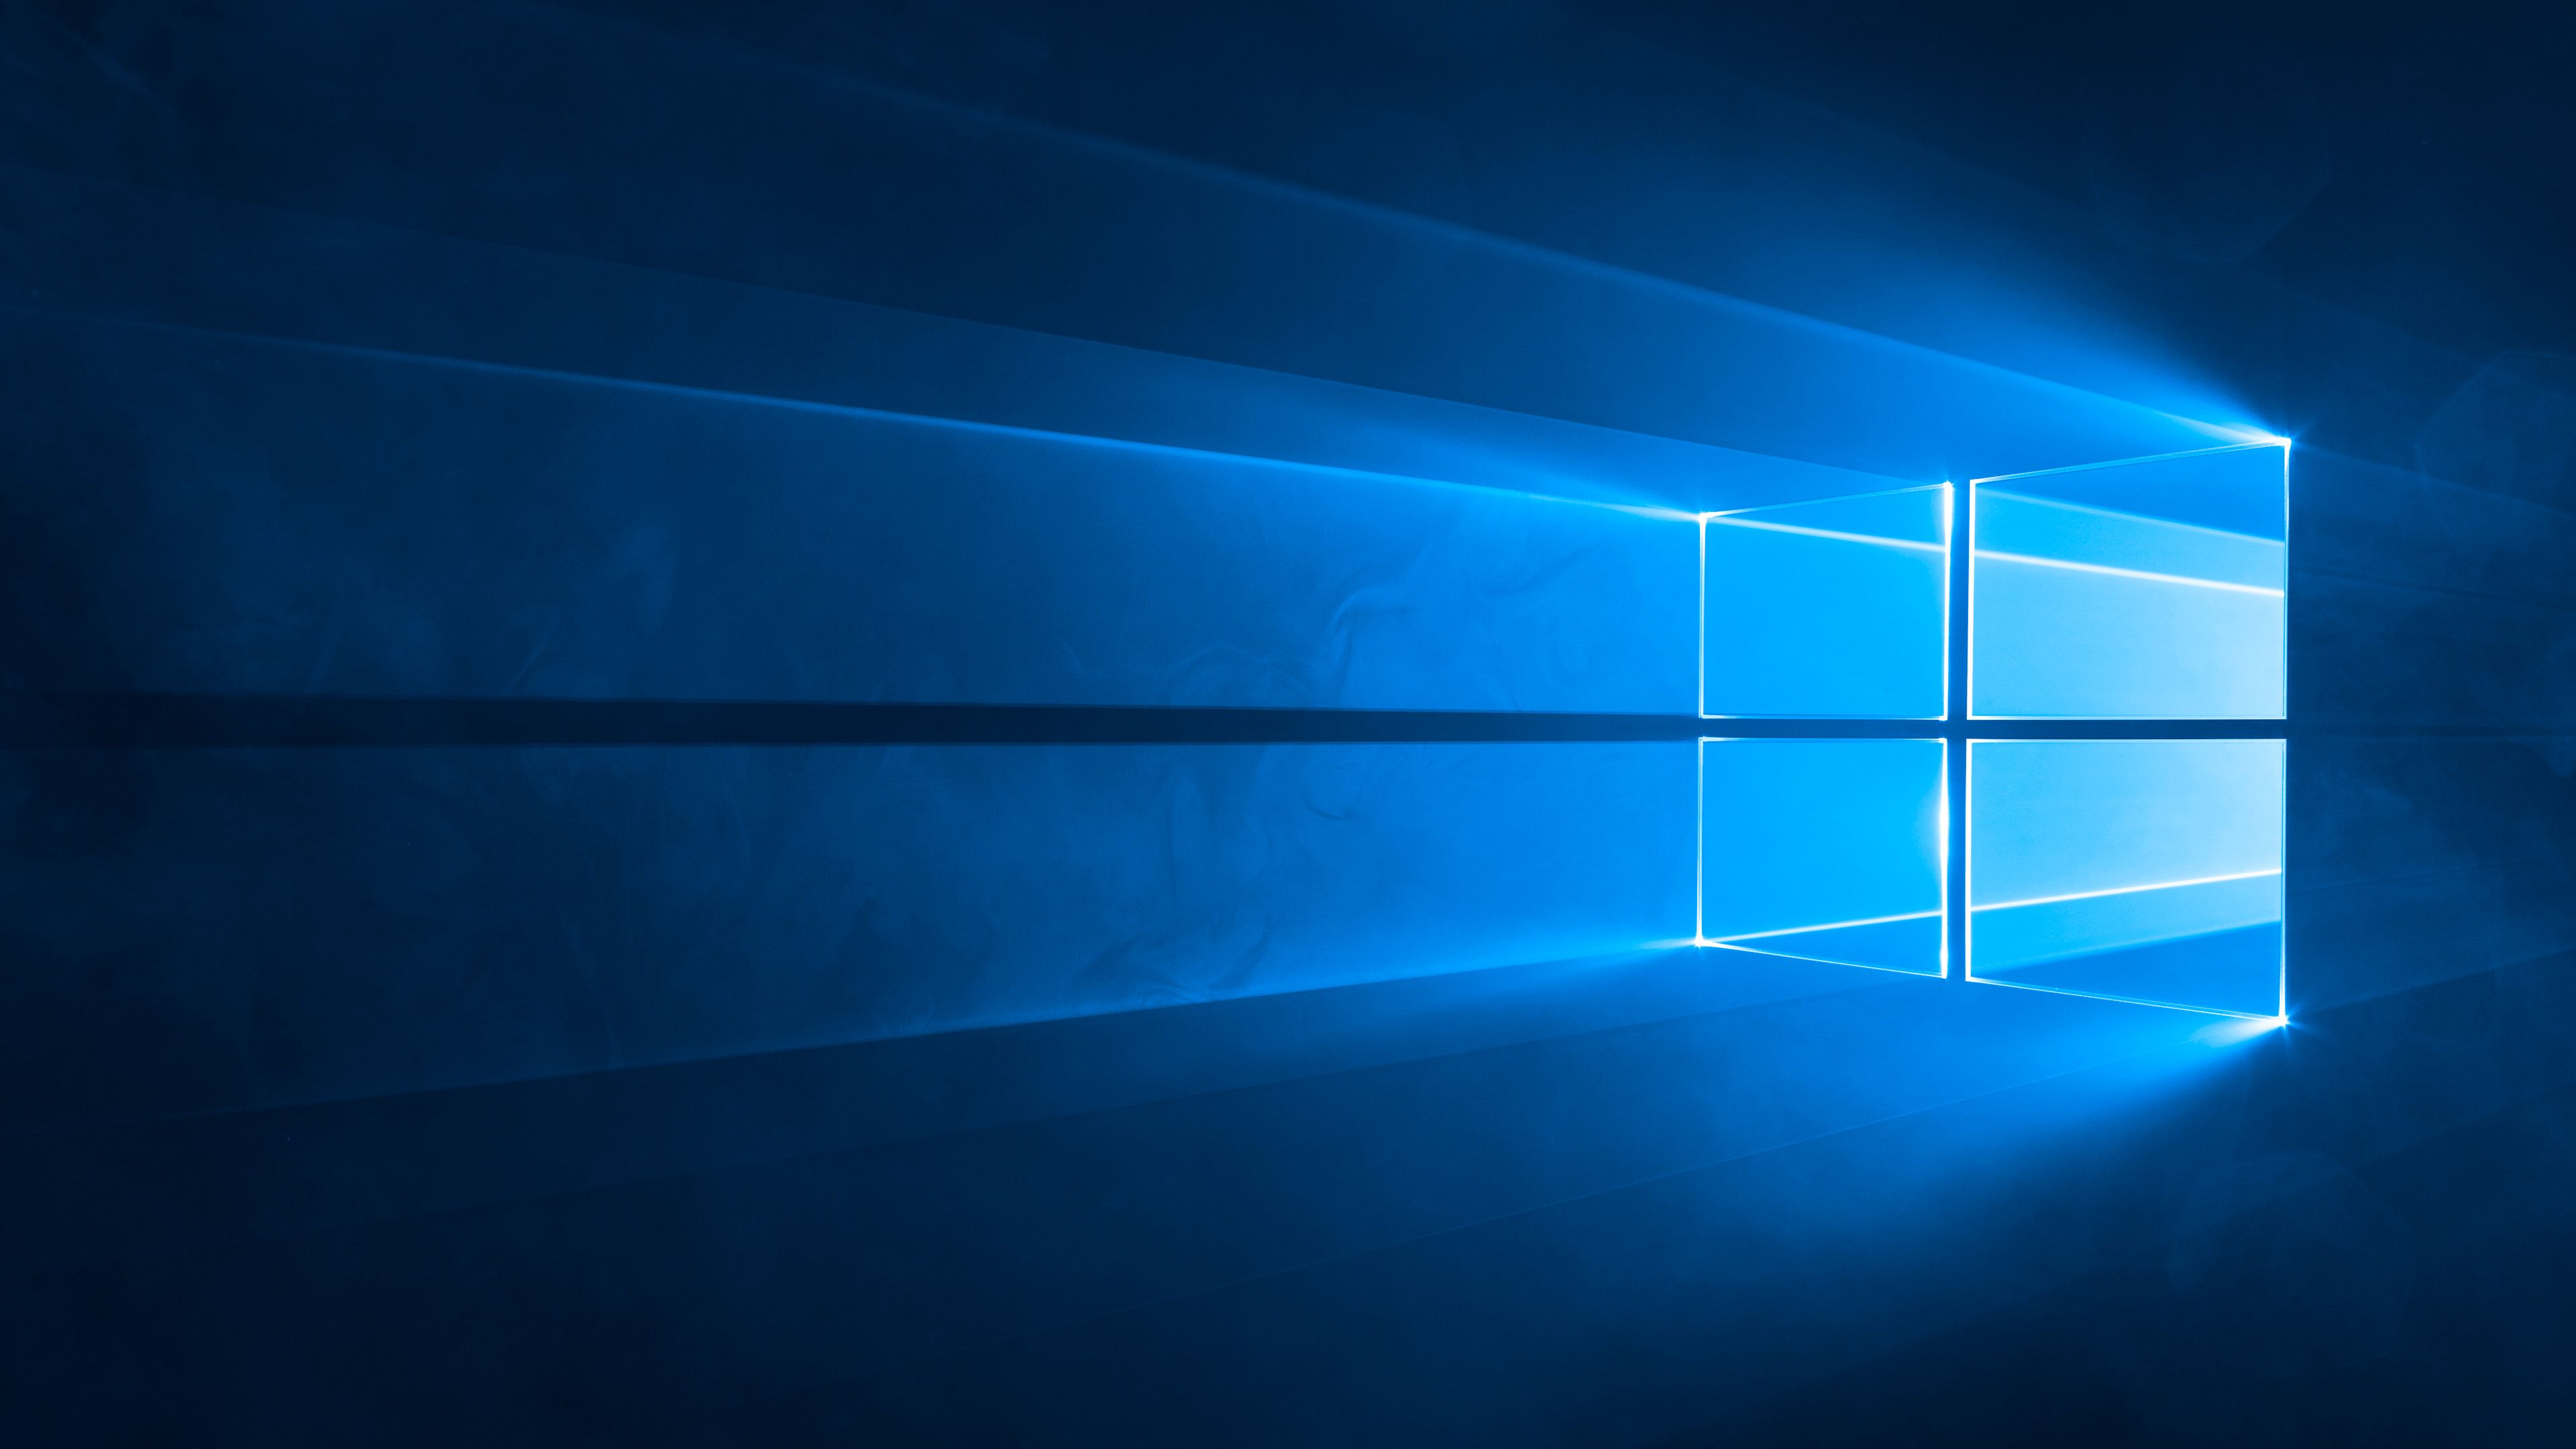 Tin tức về việc ngừng bán Windows 10 có thể khiến nhiều người lo ngại. Nhưng đừng lo lắng, các hình nền Windows 10 vẫn được phát triển và cung cấp miễn phí. Hãy truy cập và tải ngay hình nền mặc định Windows 10 trên WallpaperSafari để cập nhật không gian máy tính của bạn trong thời gian tới!